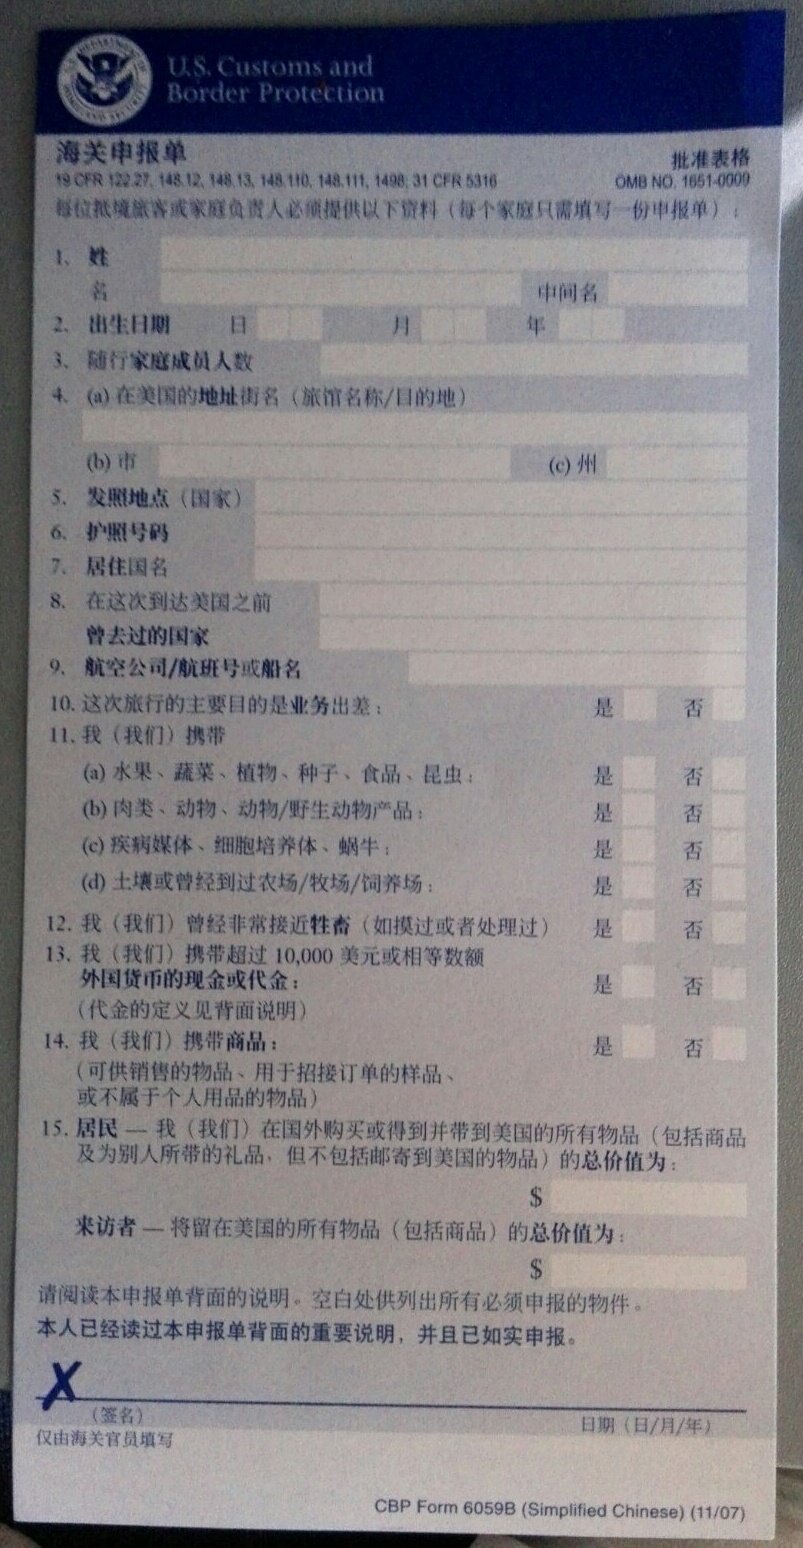 米国入境海关申报表,己全中文,够人性化.不过填写时须用洋码字.图片